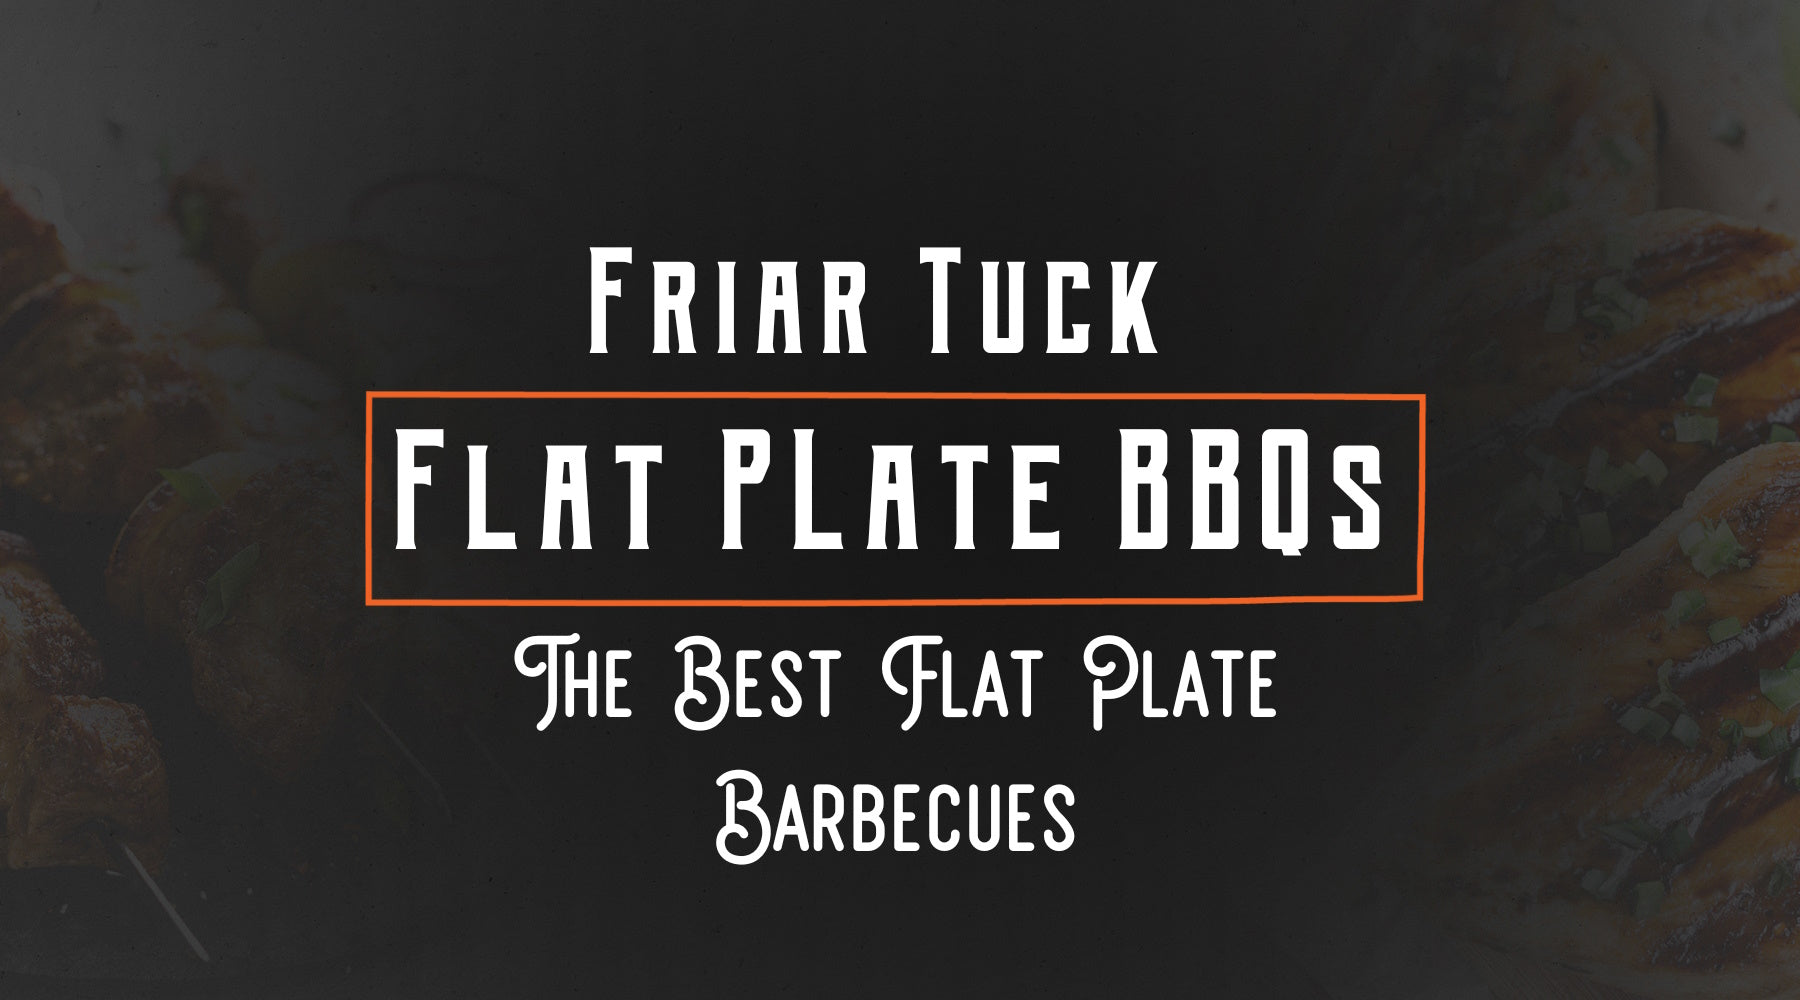 Tucker BBQs Friar Tuck Flat Plate BBQ For All